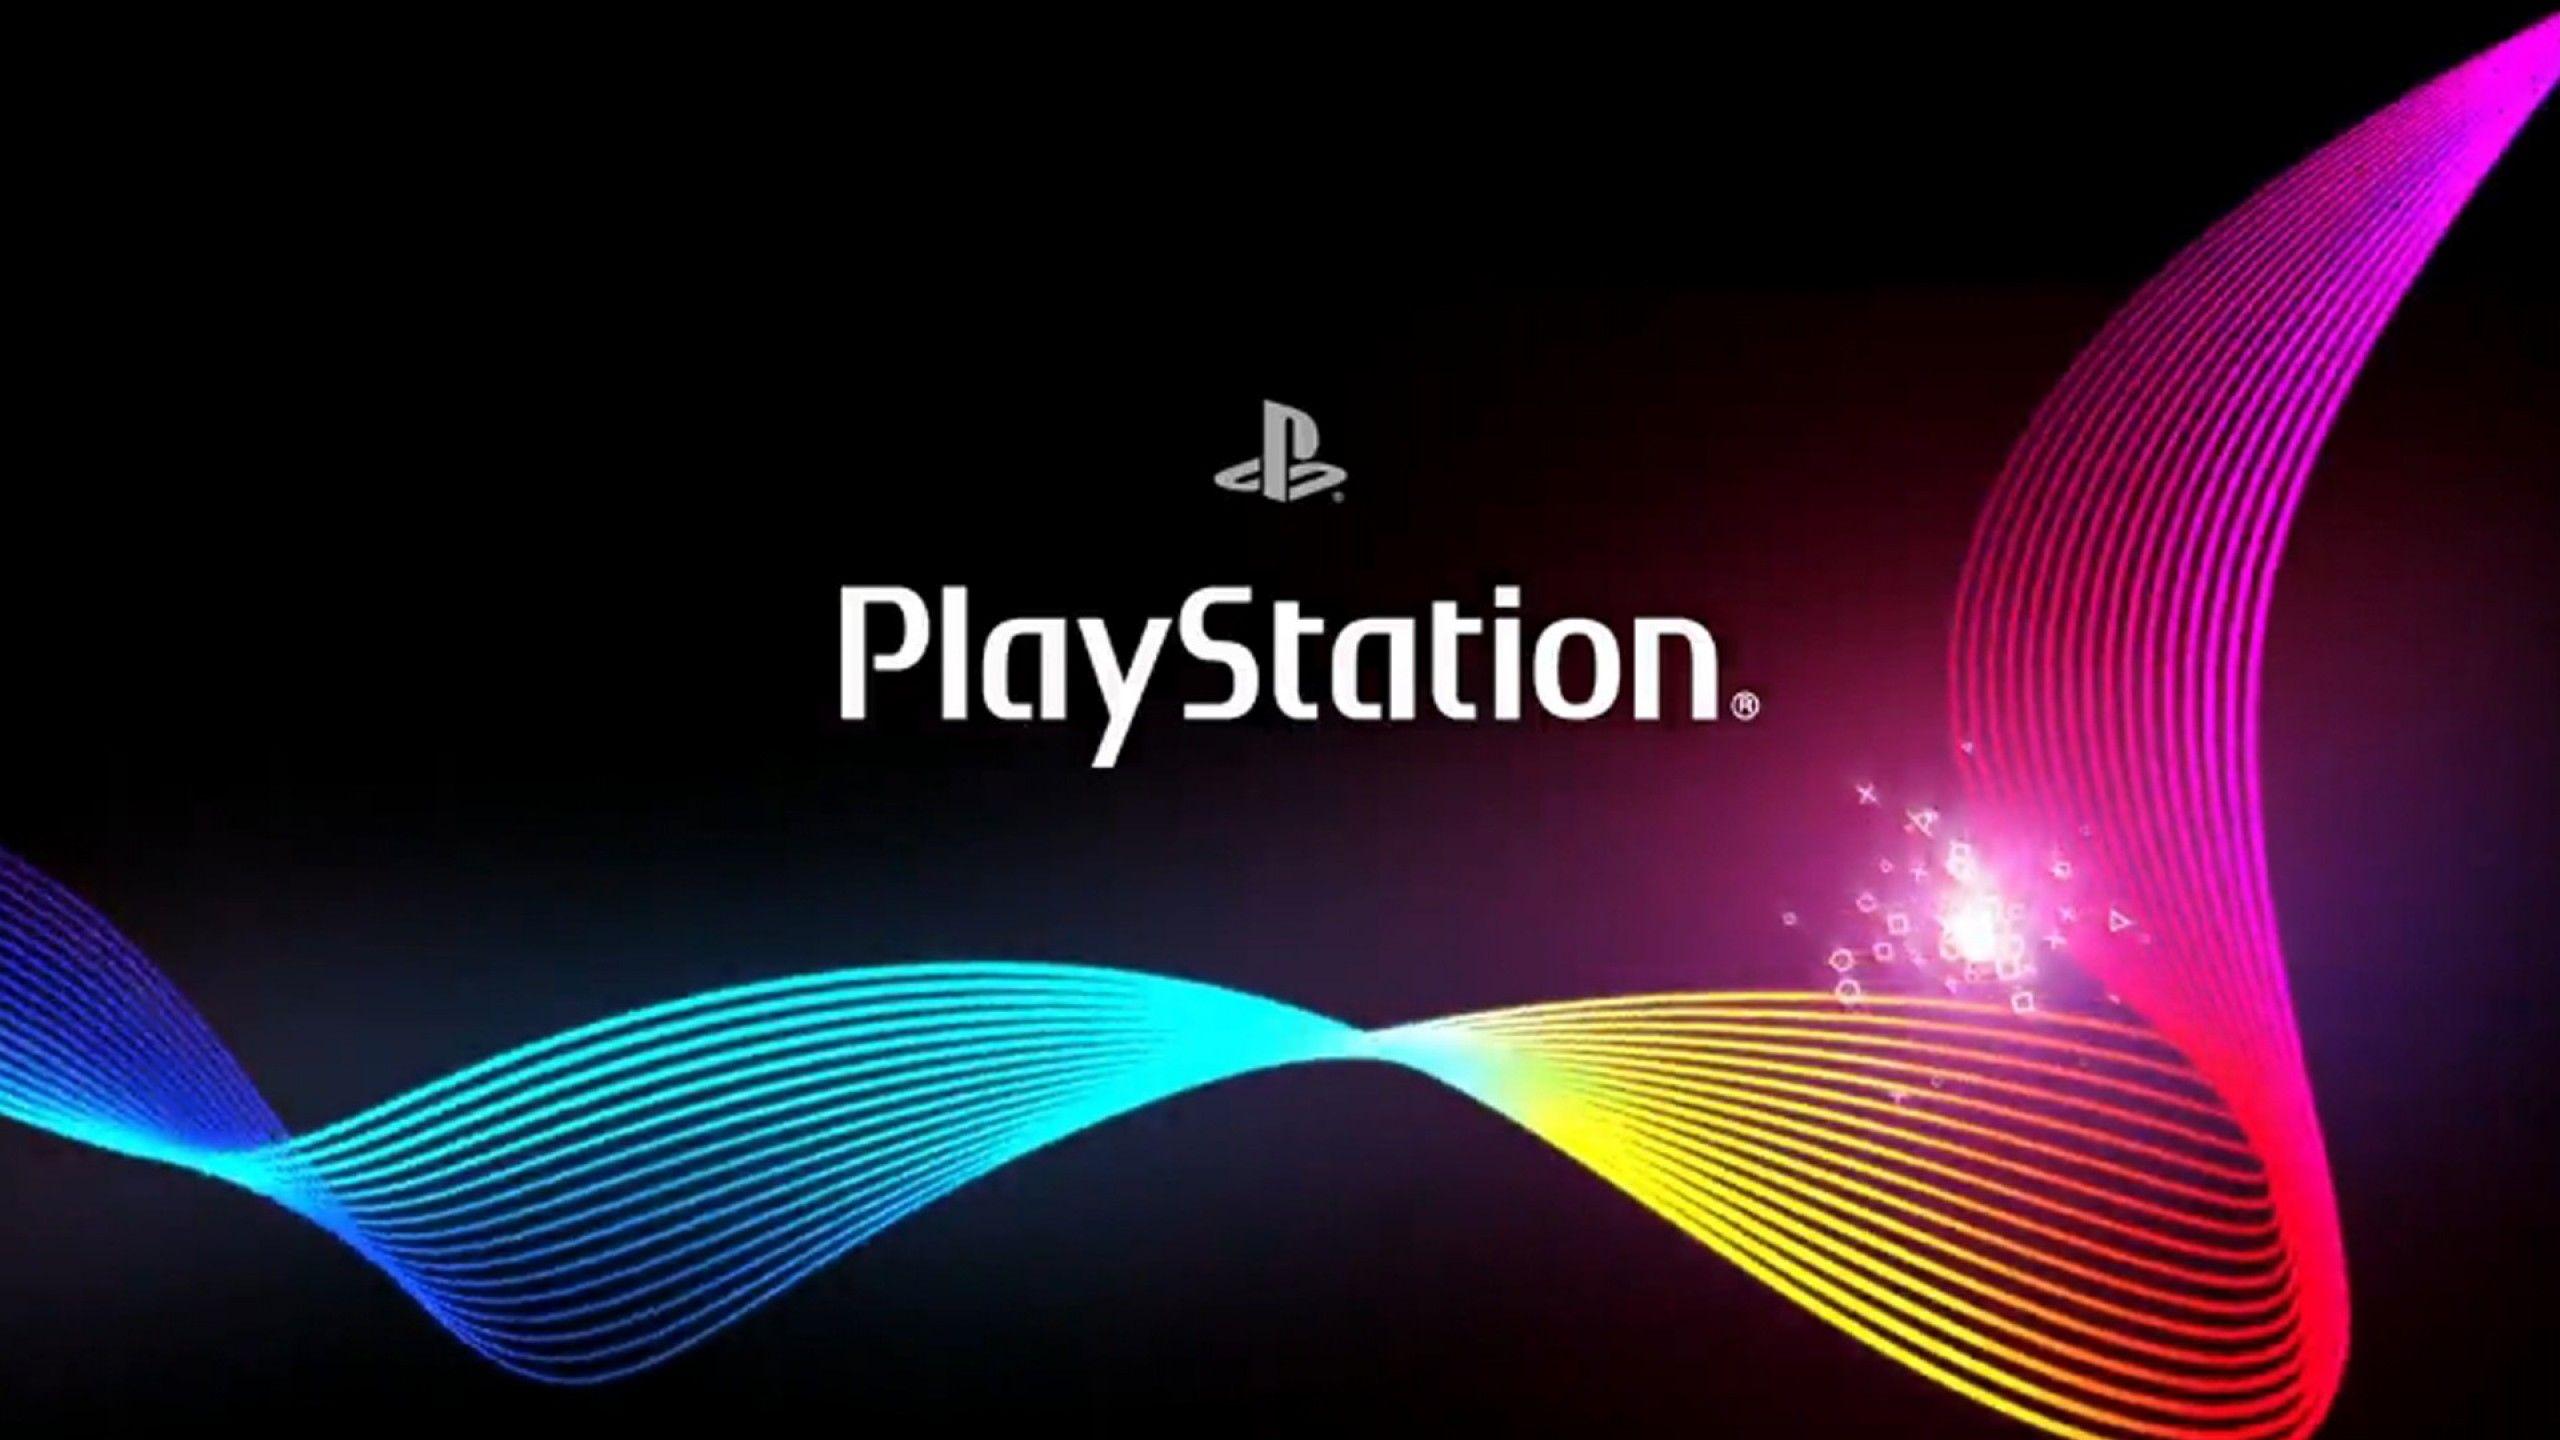 2560x1440 Lana Sova - Hình nền PlayStation, 2560x1440 px - tải xuống miễn phí